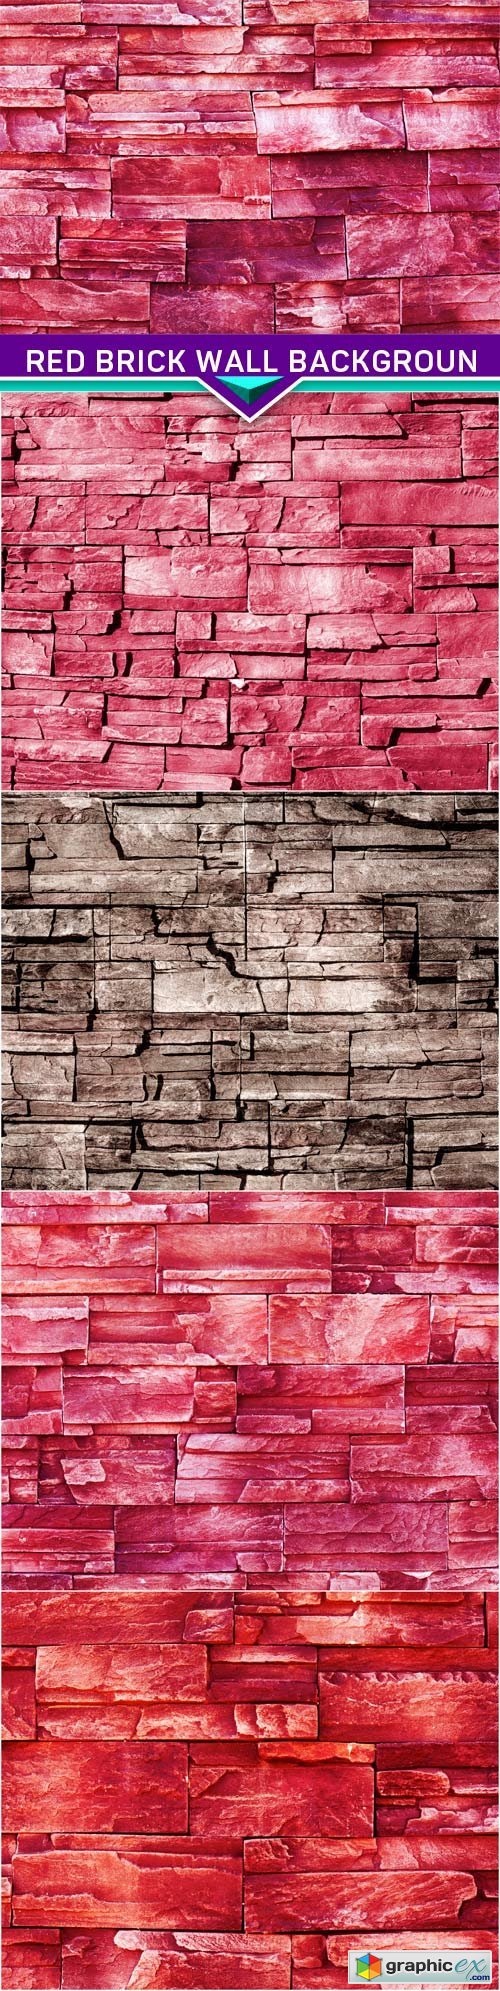 Red brick wall backgroun 5x JPEG